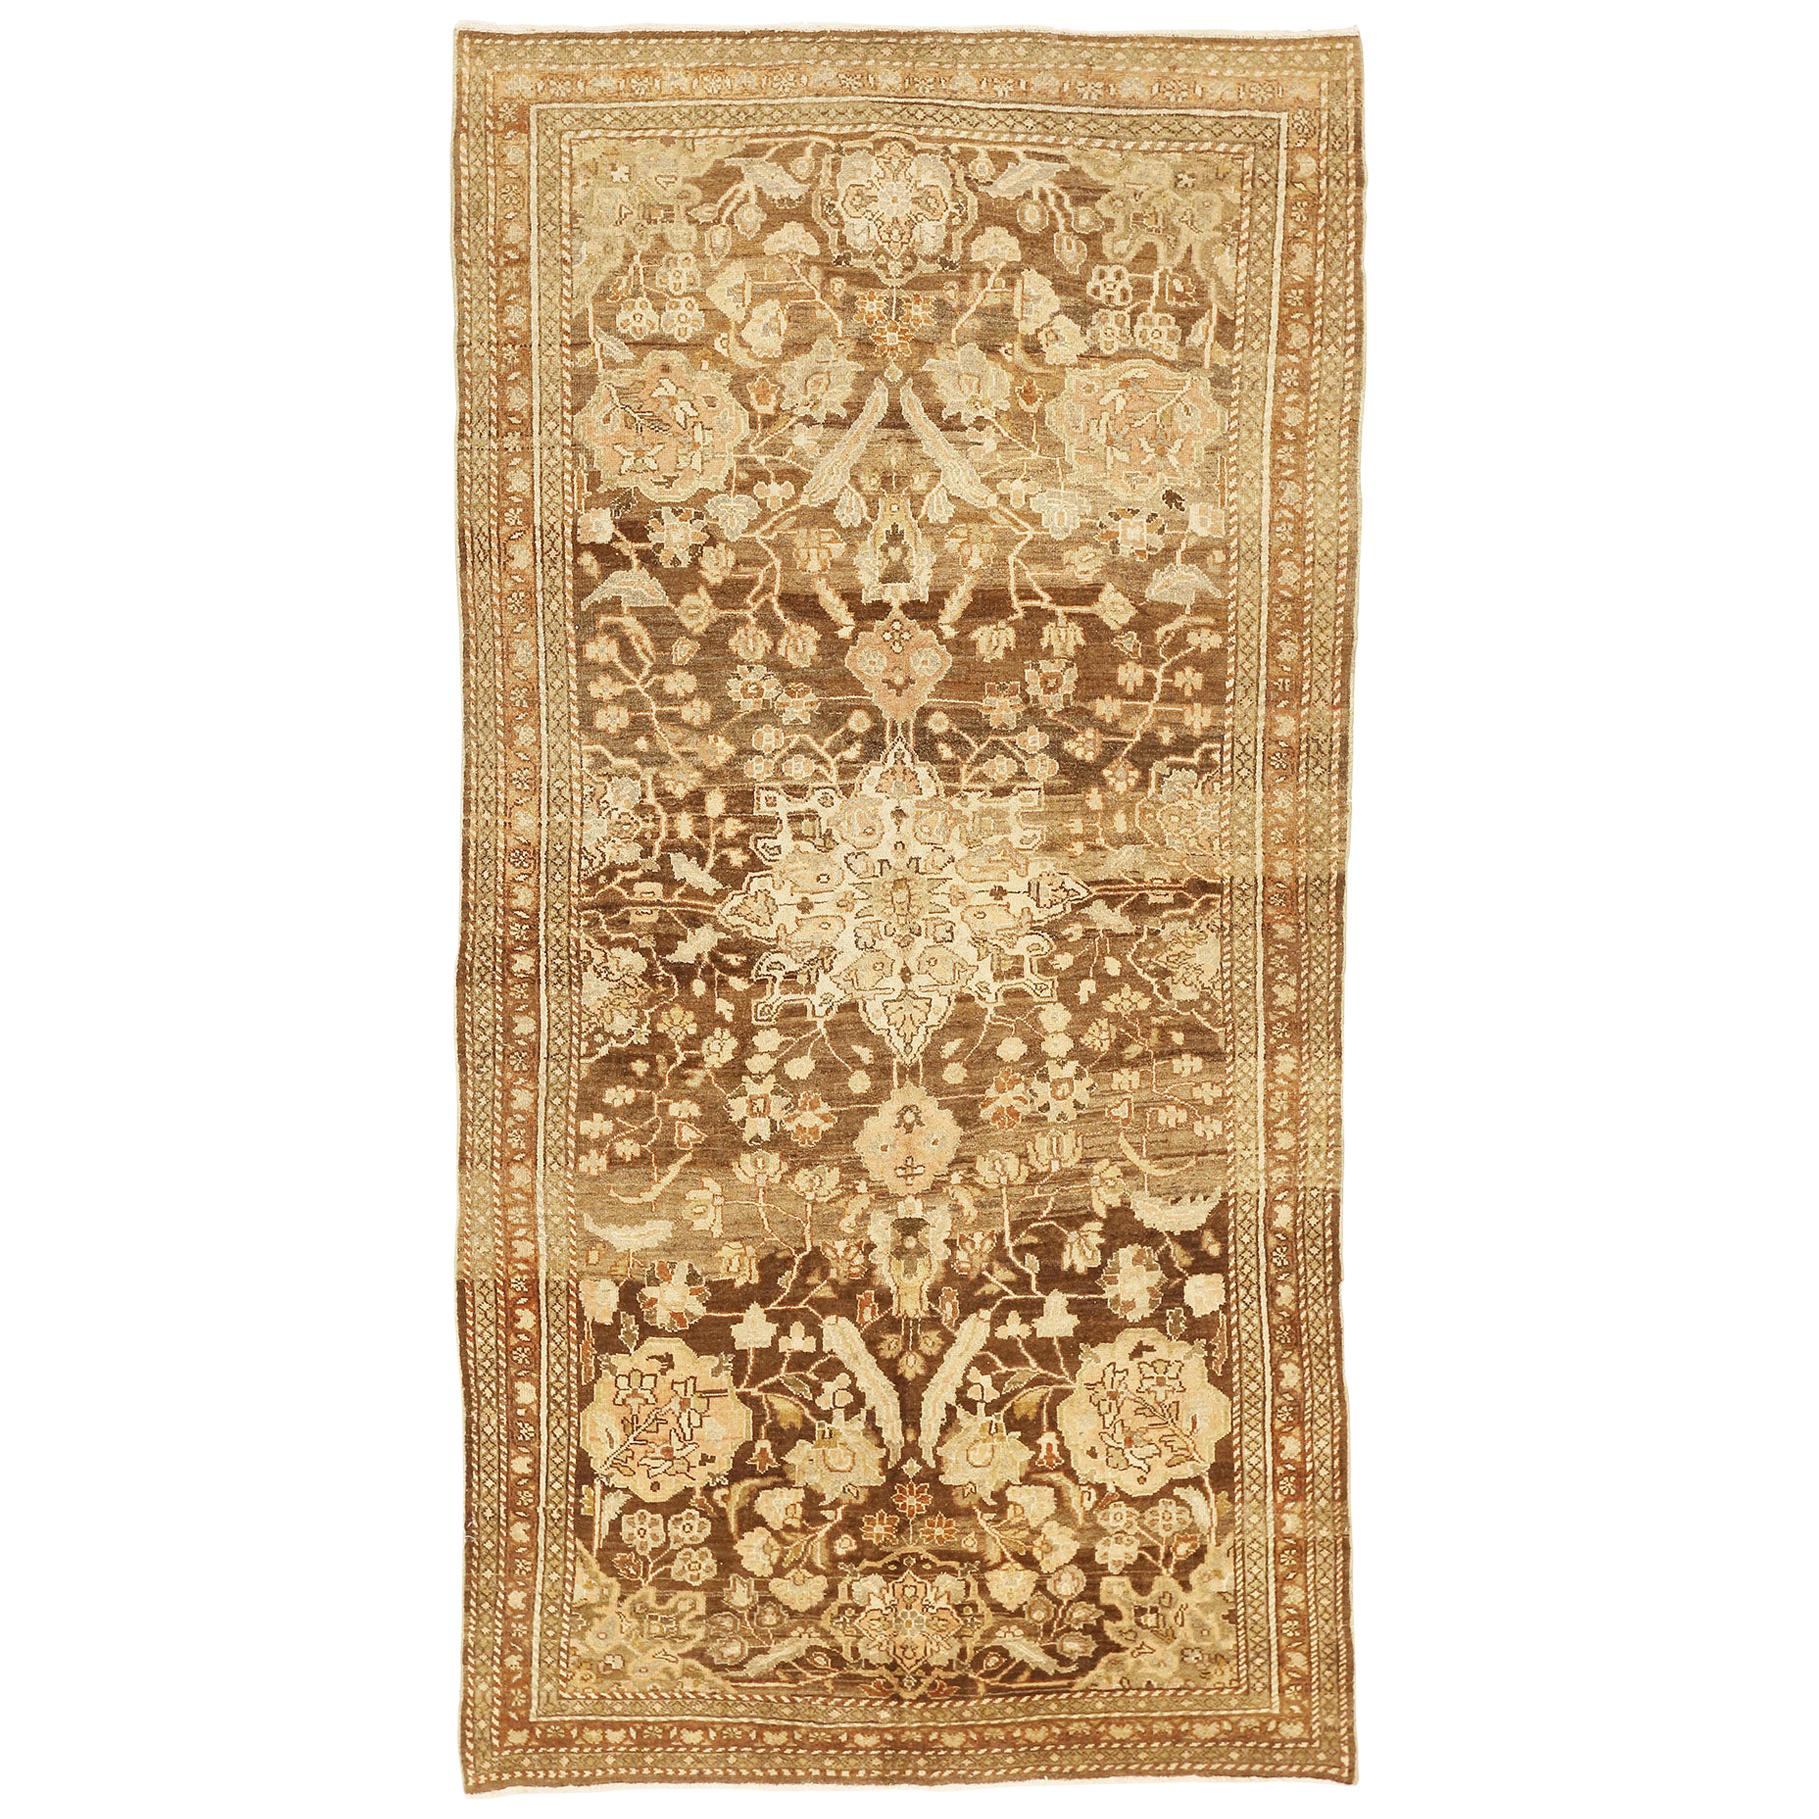 Tapis persan antique Mahal avec détails floraux ivoire et gris sur fond brun